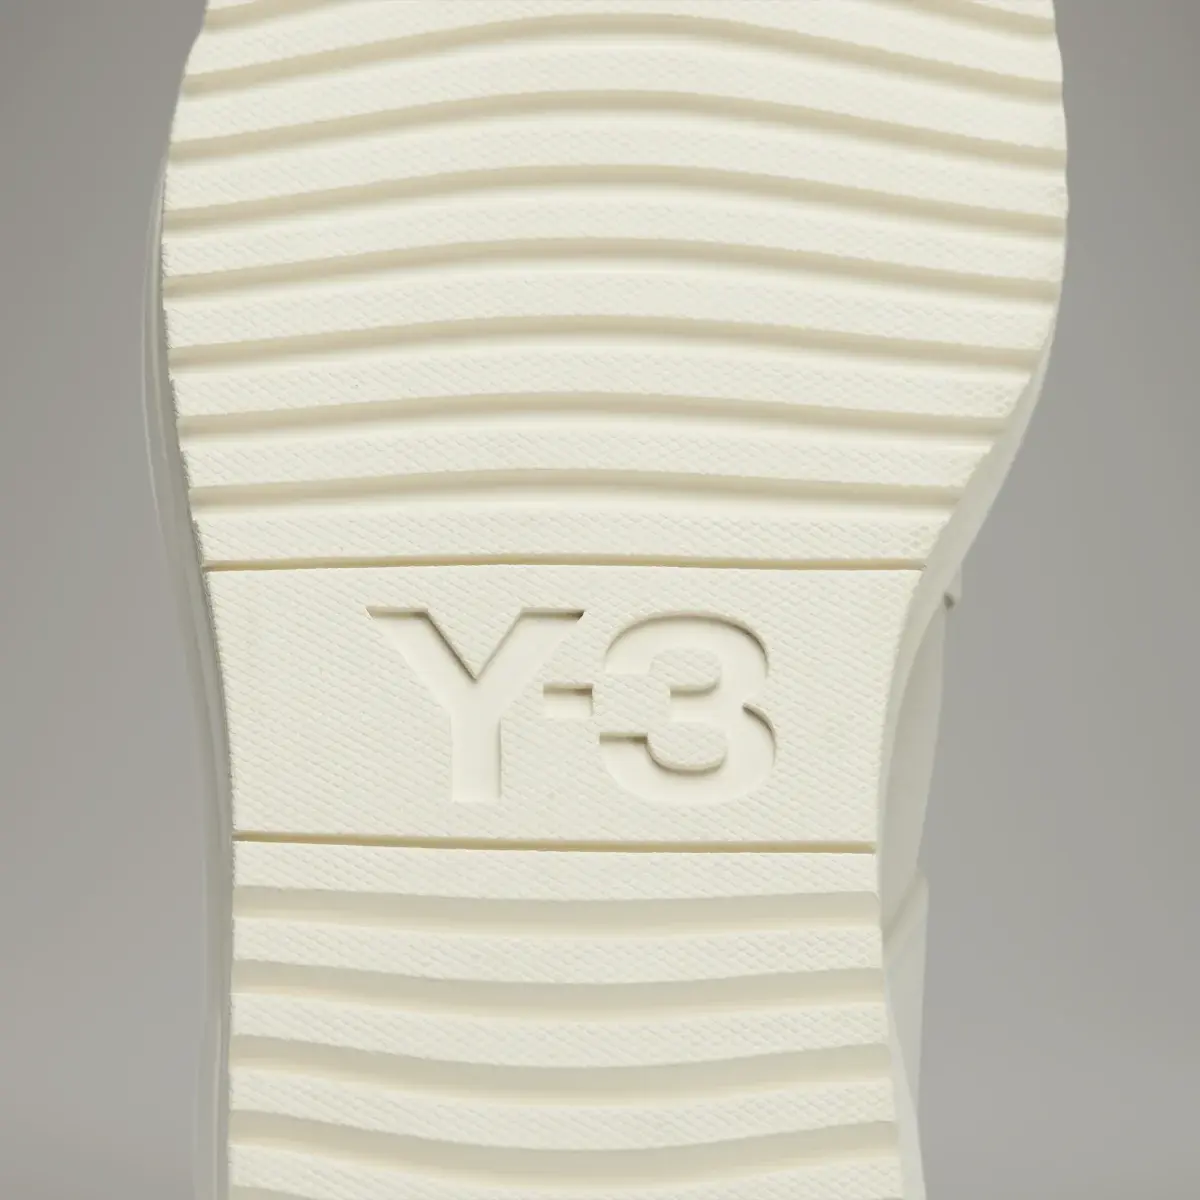 Adidas Y-3 Rivalry Sandals. 3